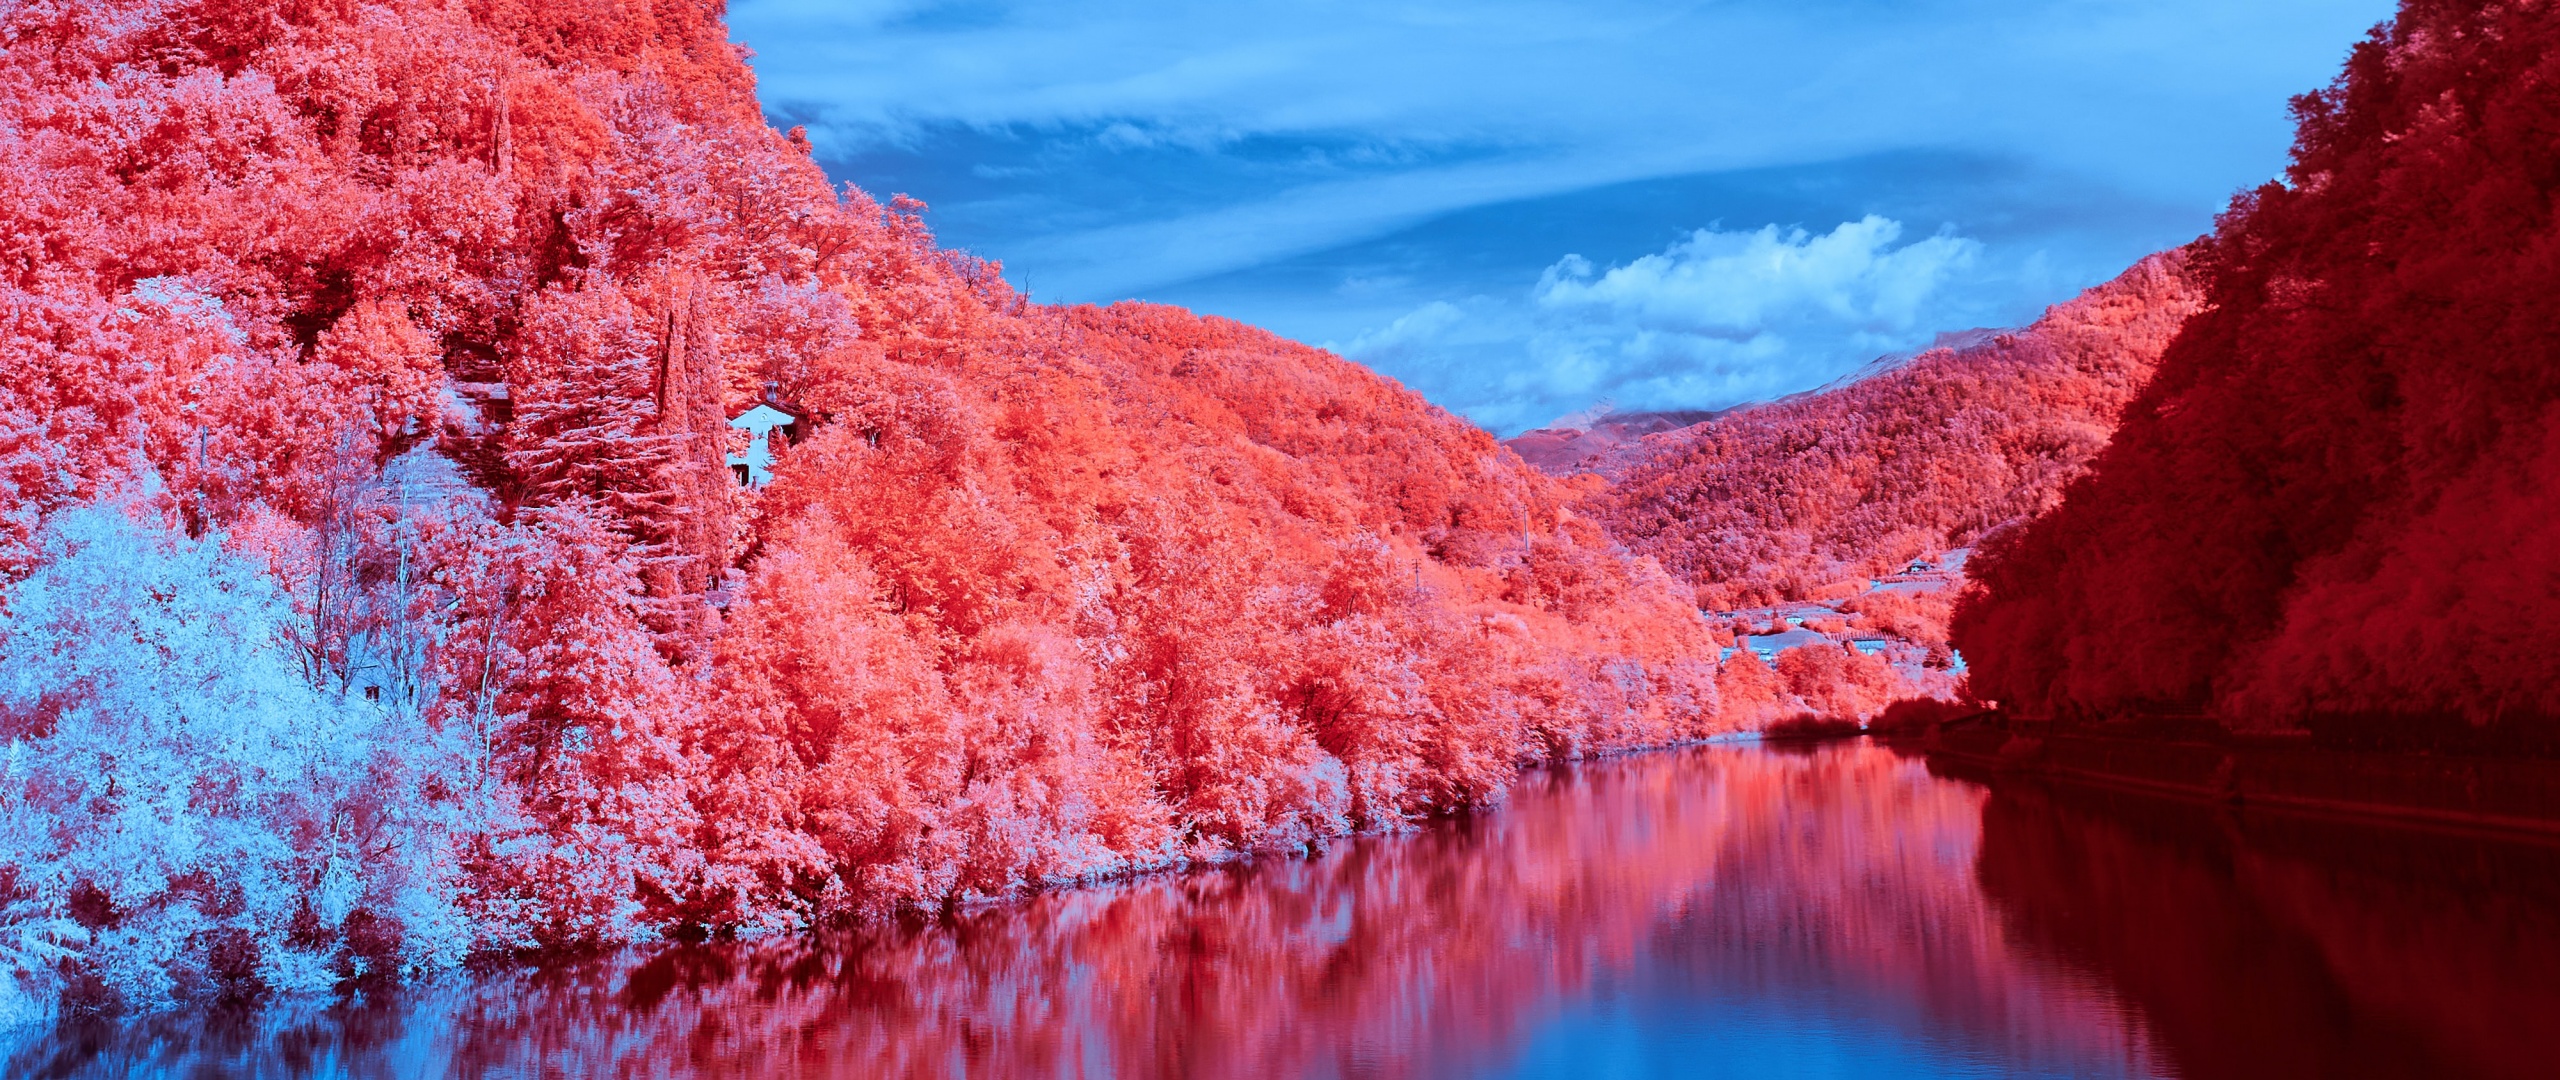 Wallpaper red, nature, rose, beauty, flora images for desktop, section  цветы - download